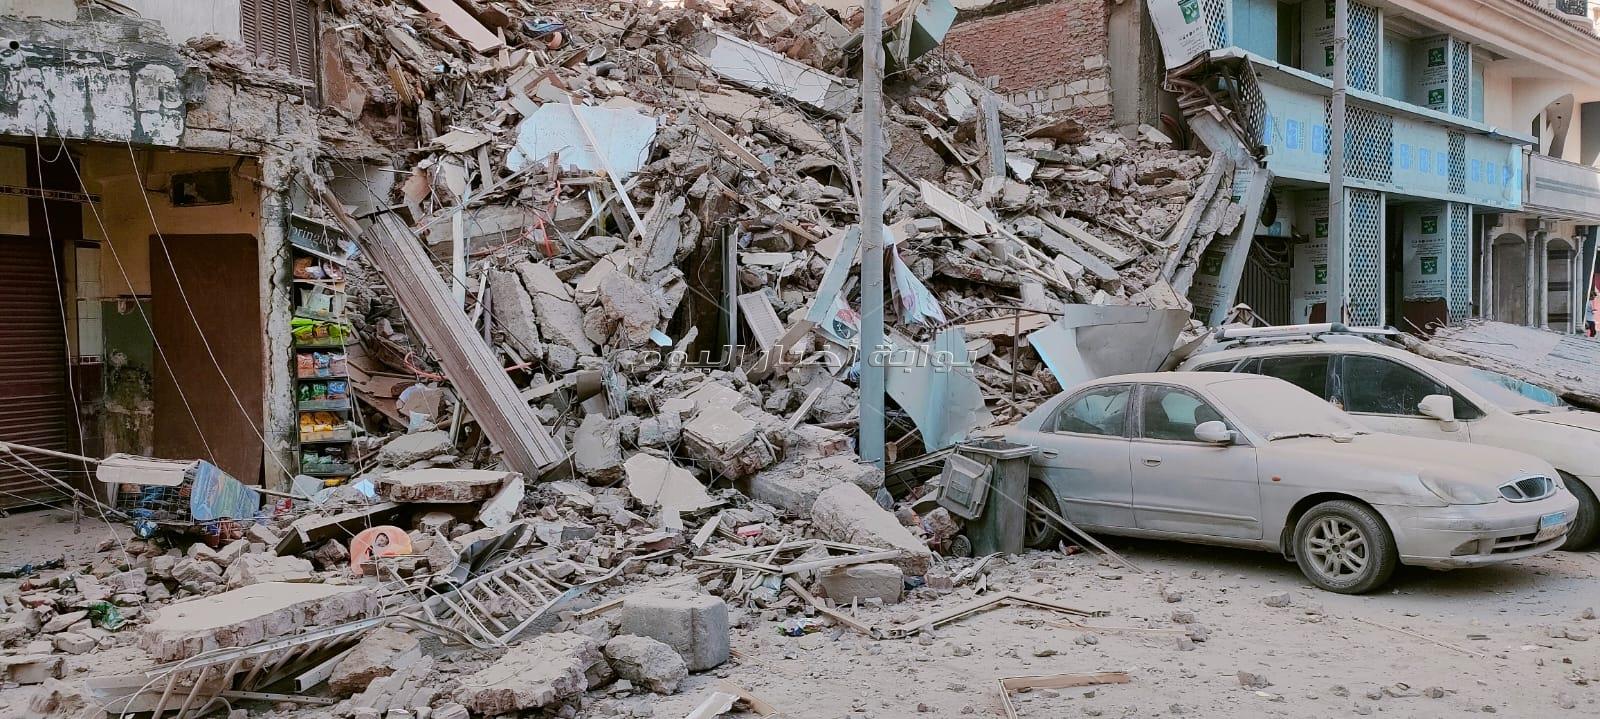 انهيار عقار من 13 طابق بالإسكندرية والحماية المدنية تكافح لإنقاذ السكان